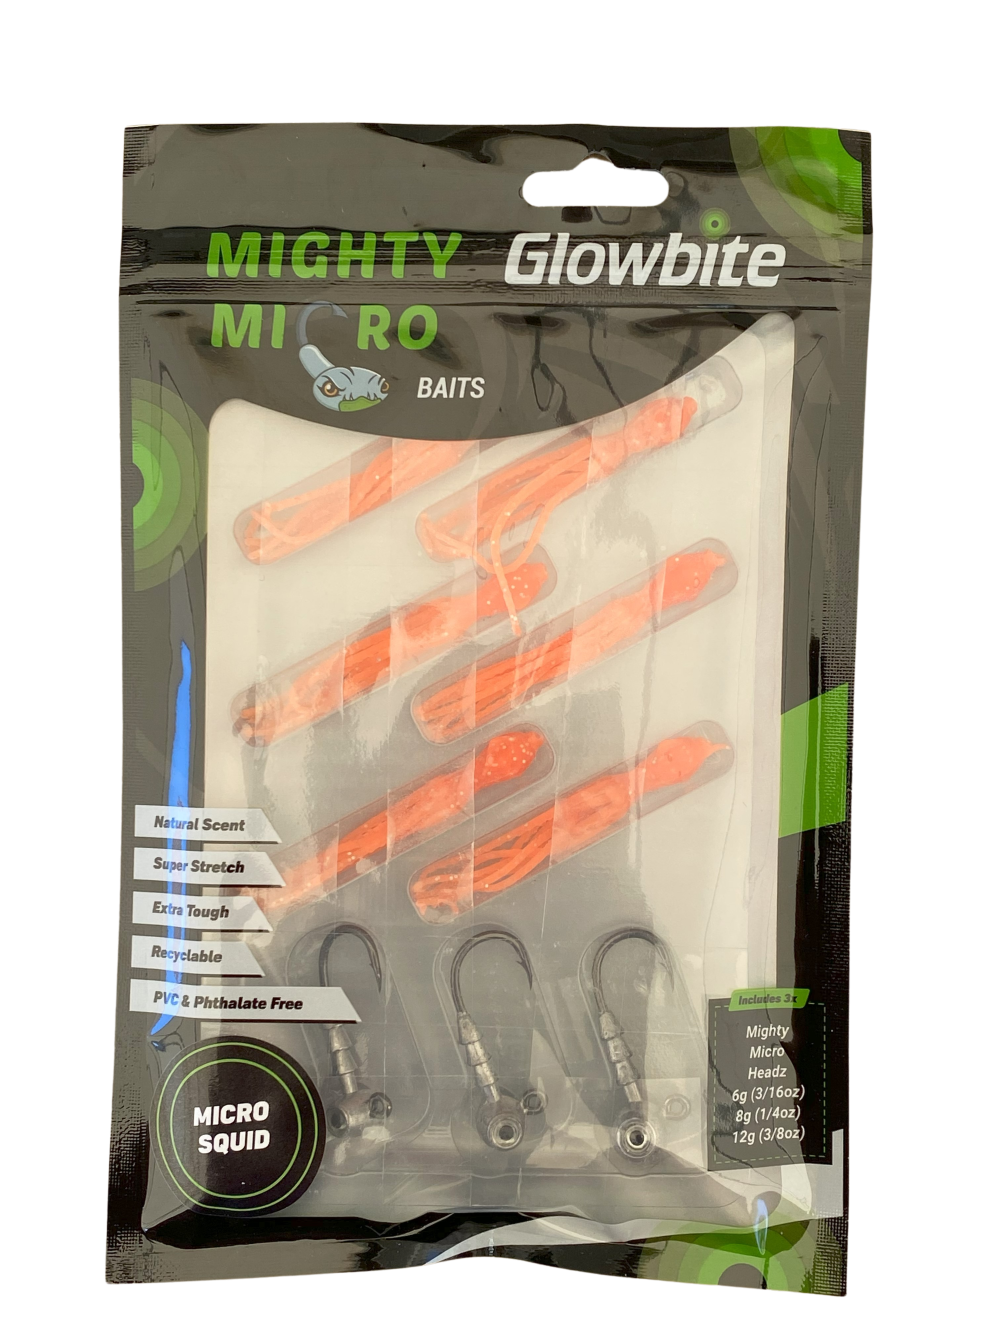 Glowbite Mighty Micro Bait - Micro Squid - Orange glow